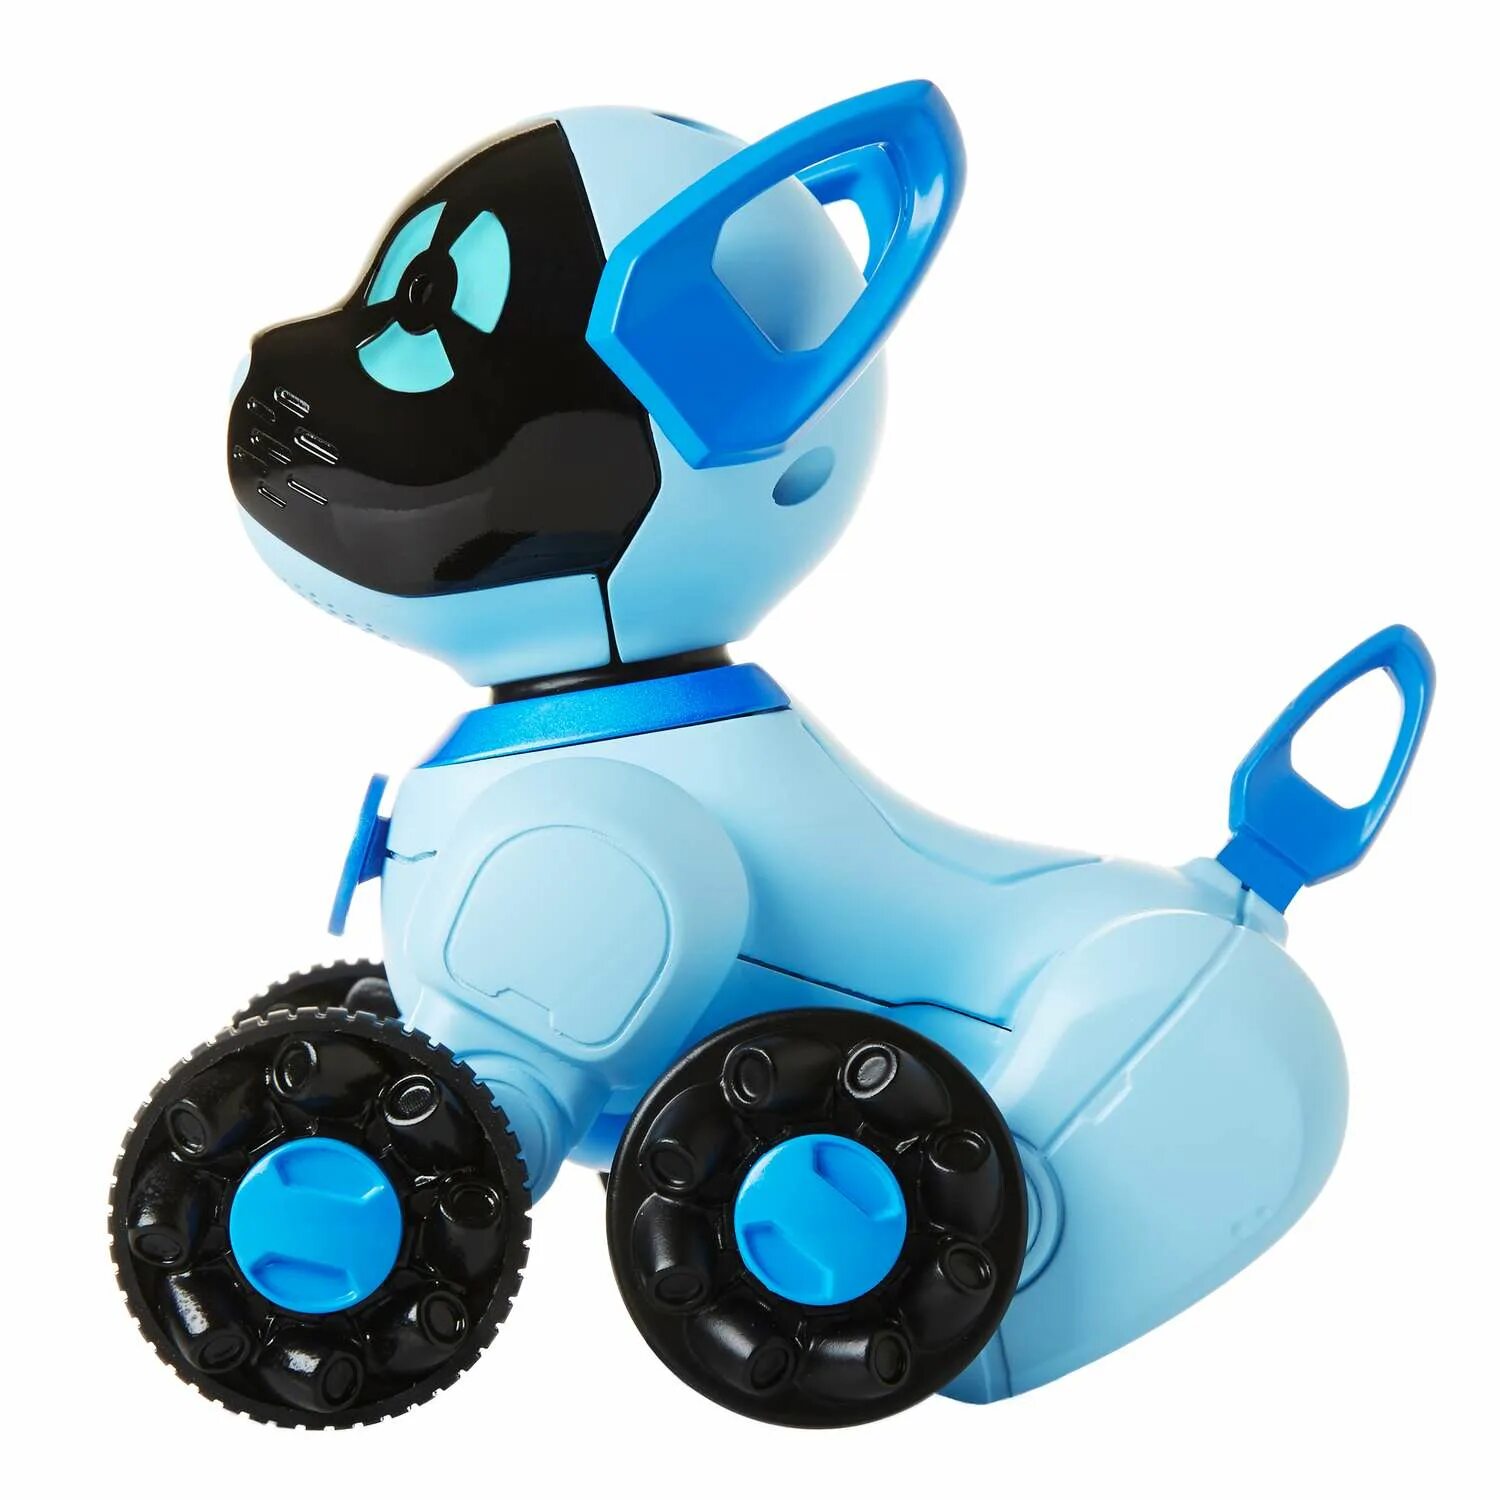 Робот WOWWEE Chippies. Робот WOWWEE собачка. Робот WOWWEE Chippies 2804-3818 (Blue). Робот собака WOWWEE Chip. Включи чипик